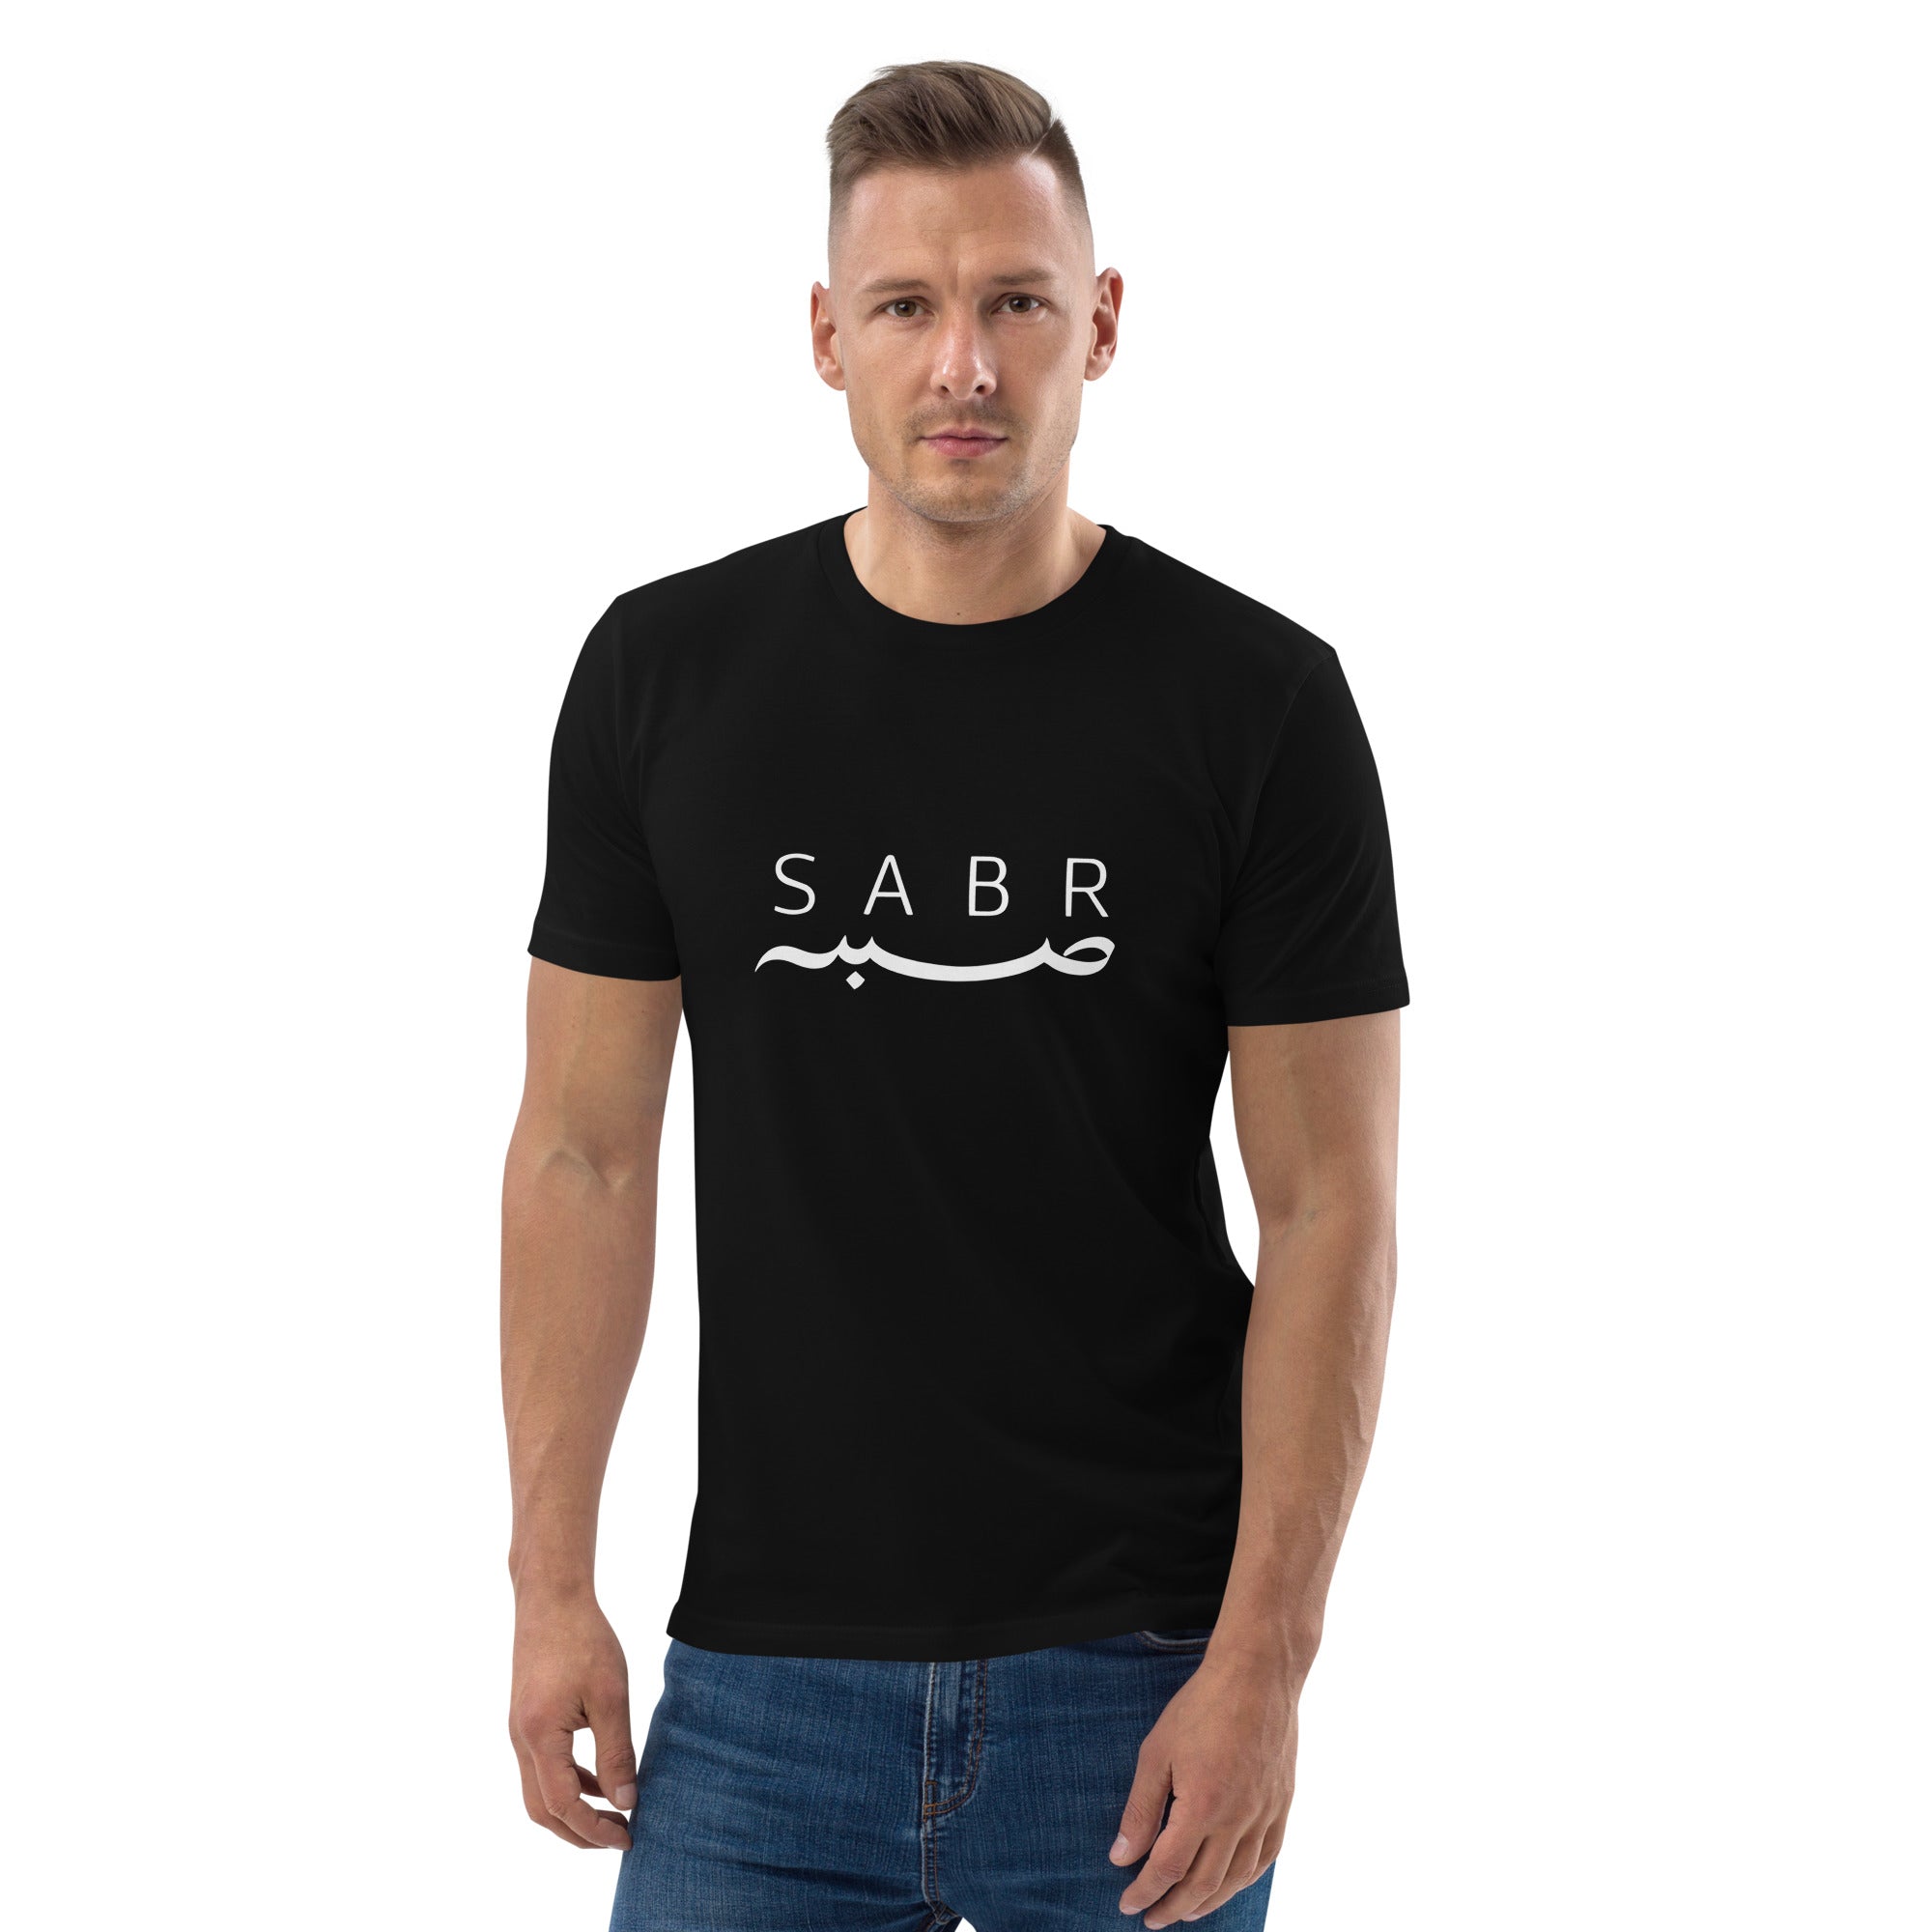 Sabr t-shirt